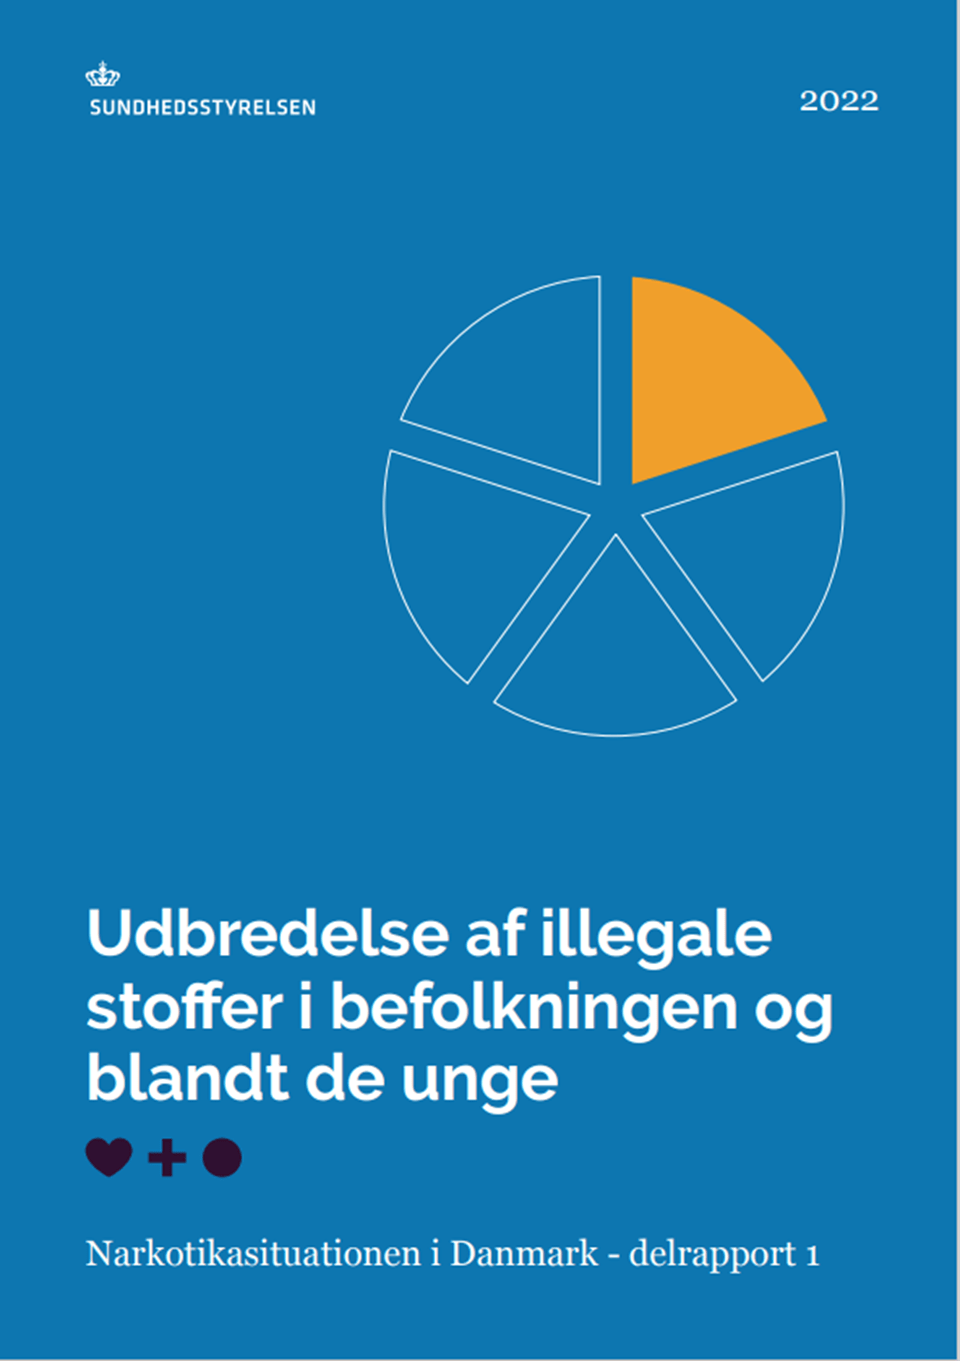 instans Integral Sindssyge Udbredelse af illegale stoffer i befolkningen og blandt de unge -  Narkotikasituationen i Danmark - delrapport 1 (2022) - Sundhedsstyrelsen